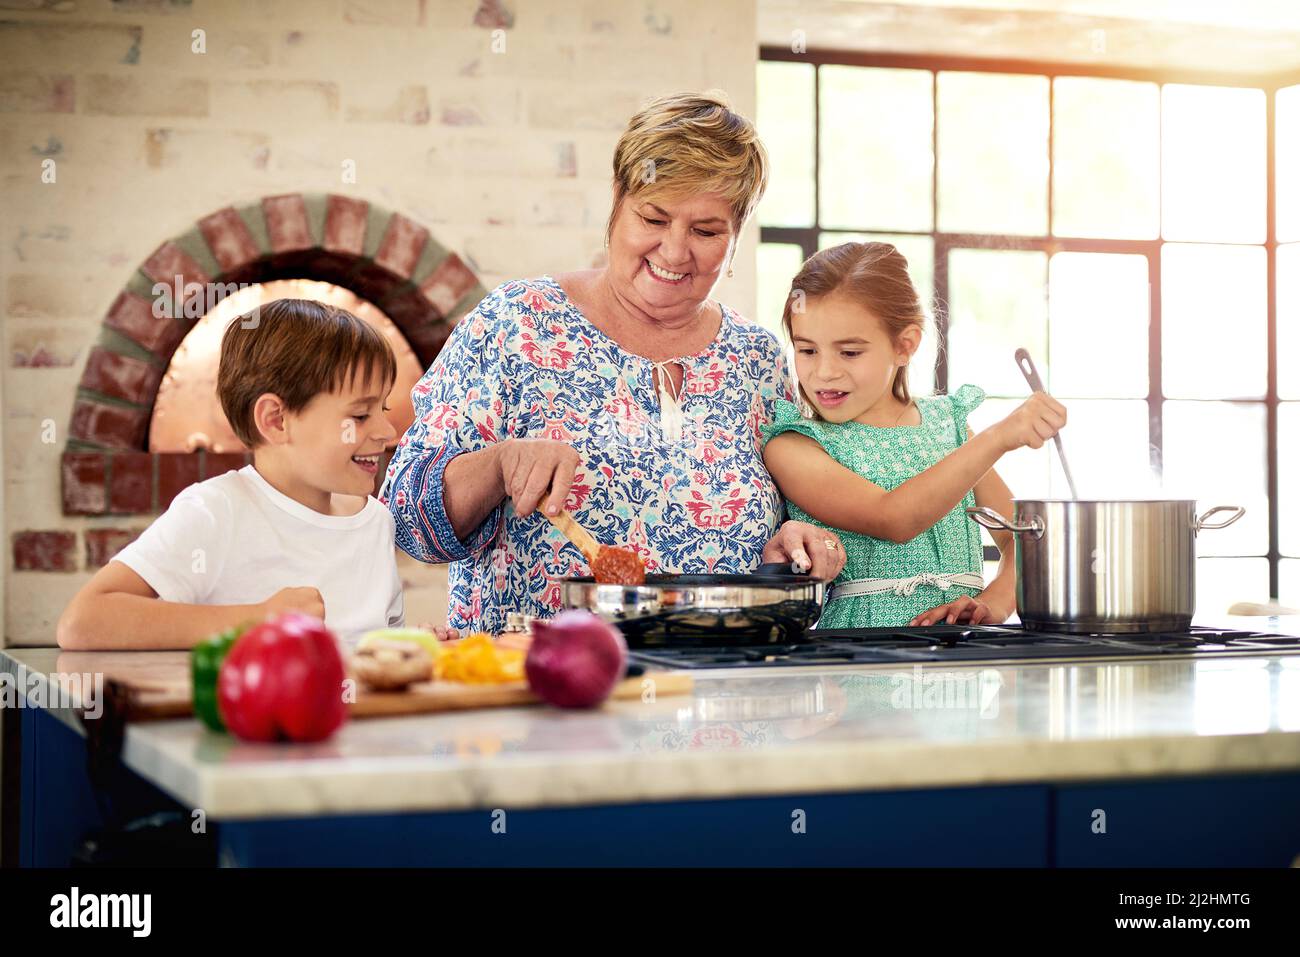 La nonna è così fortunata da avere due piccoli aiutanti desiderosi. Shot di una nonna che cucinava con i suoi due nipoti a casa. Foto Stock